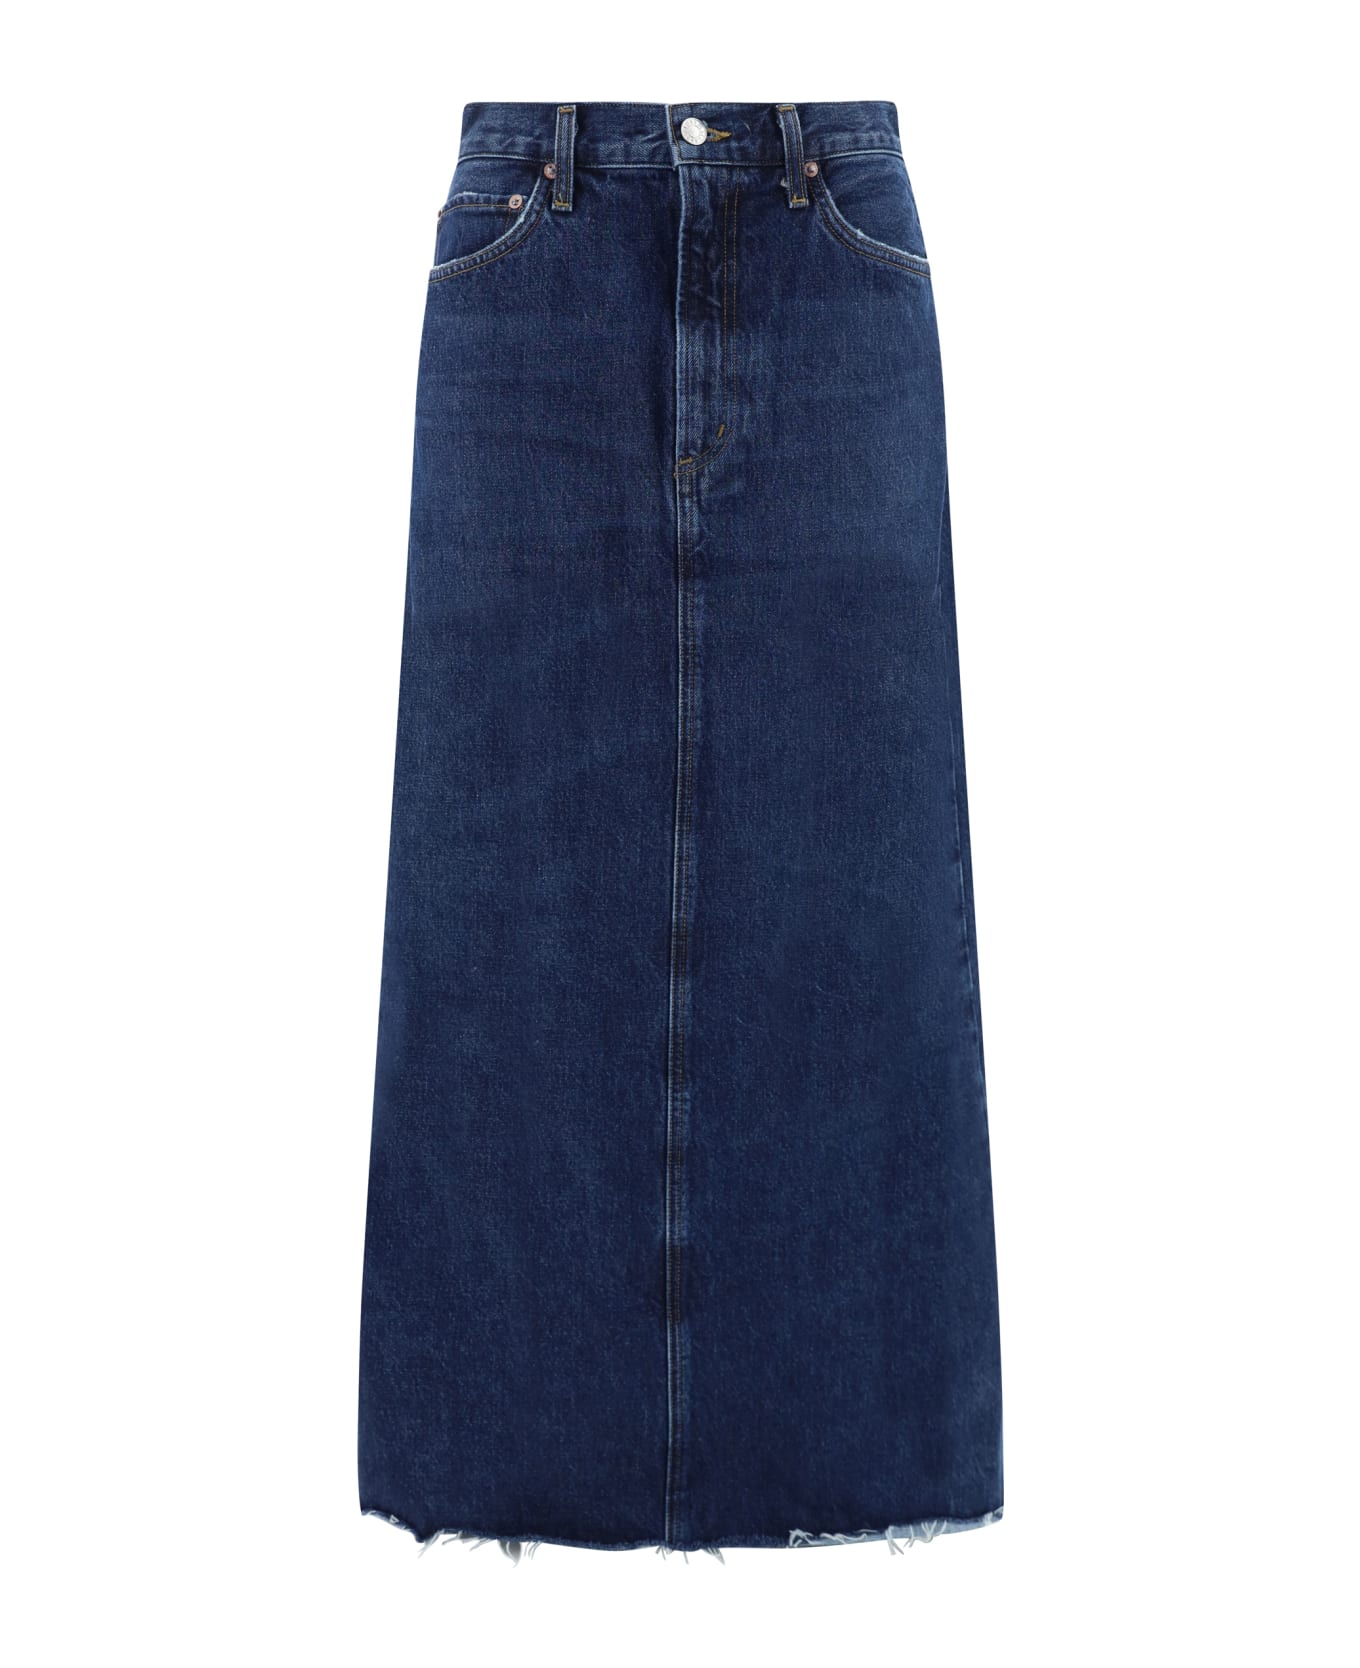 AGOLDE Denim Skirt - BLUE